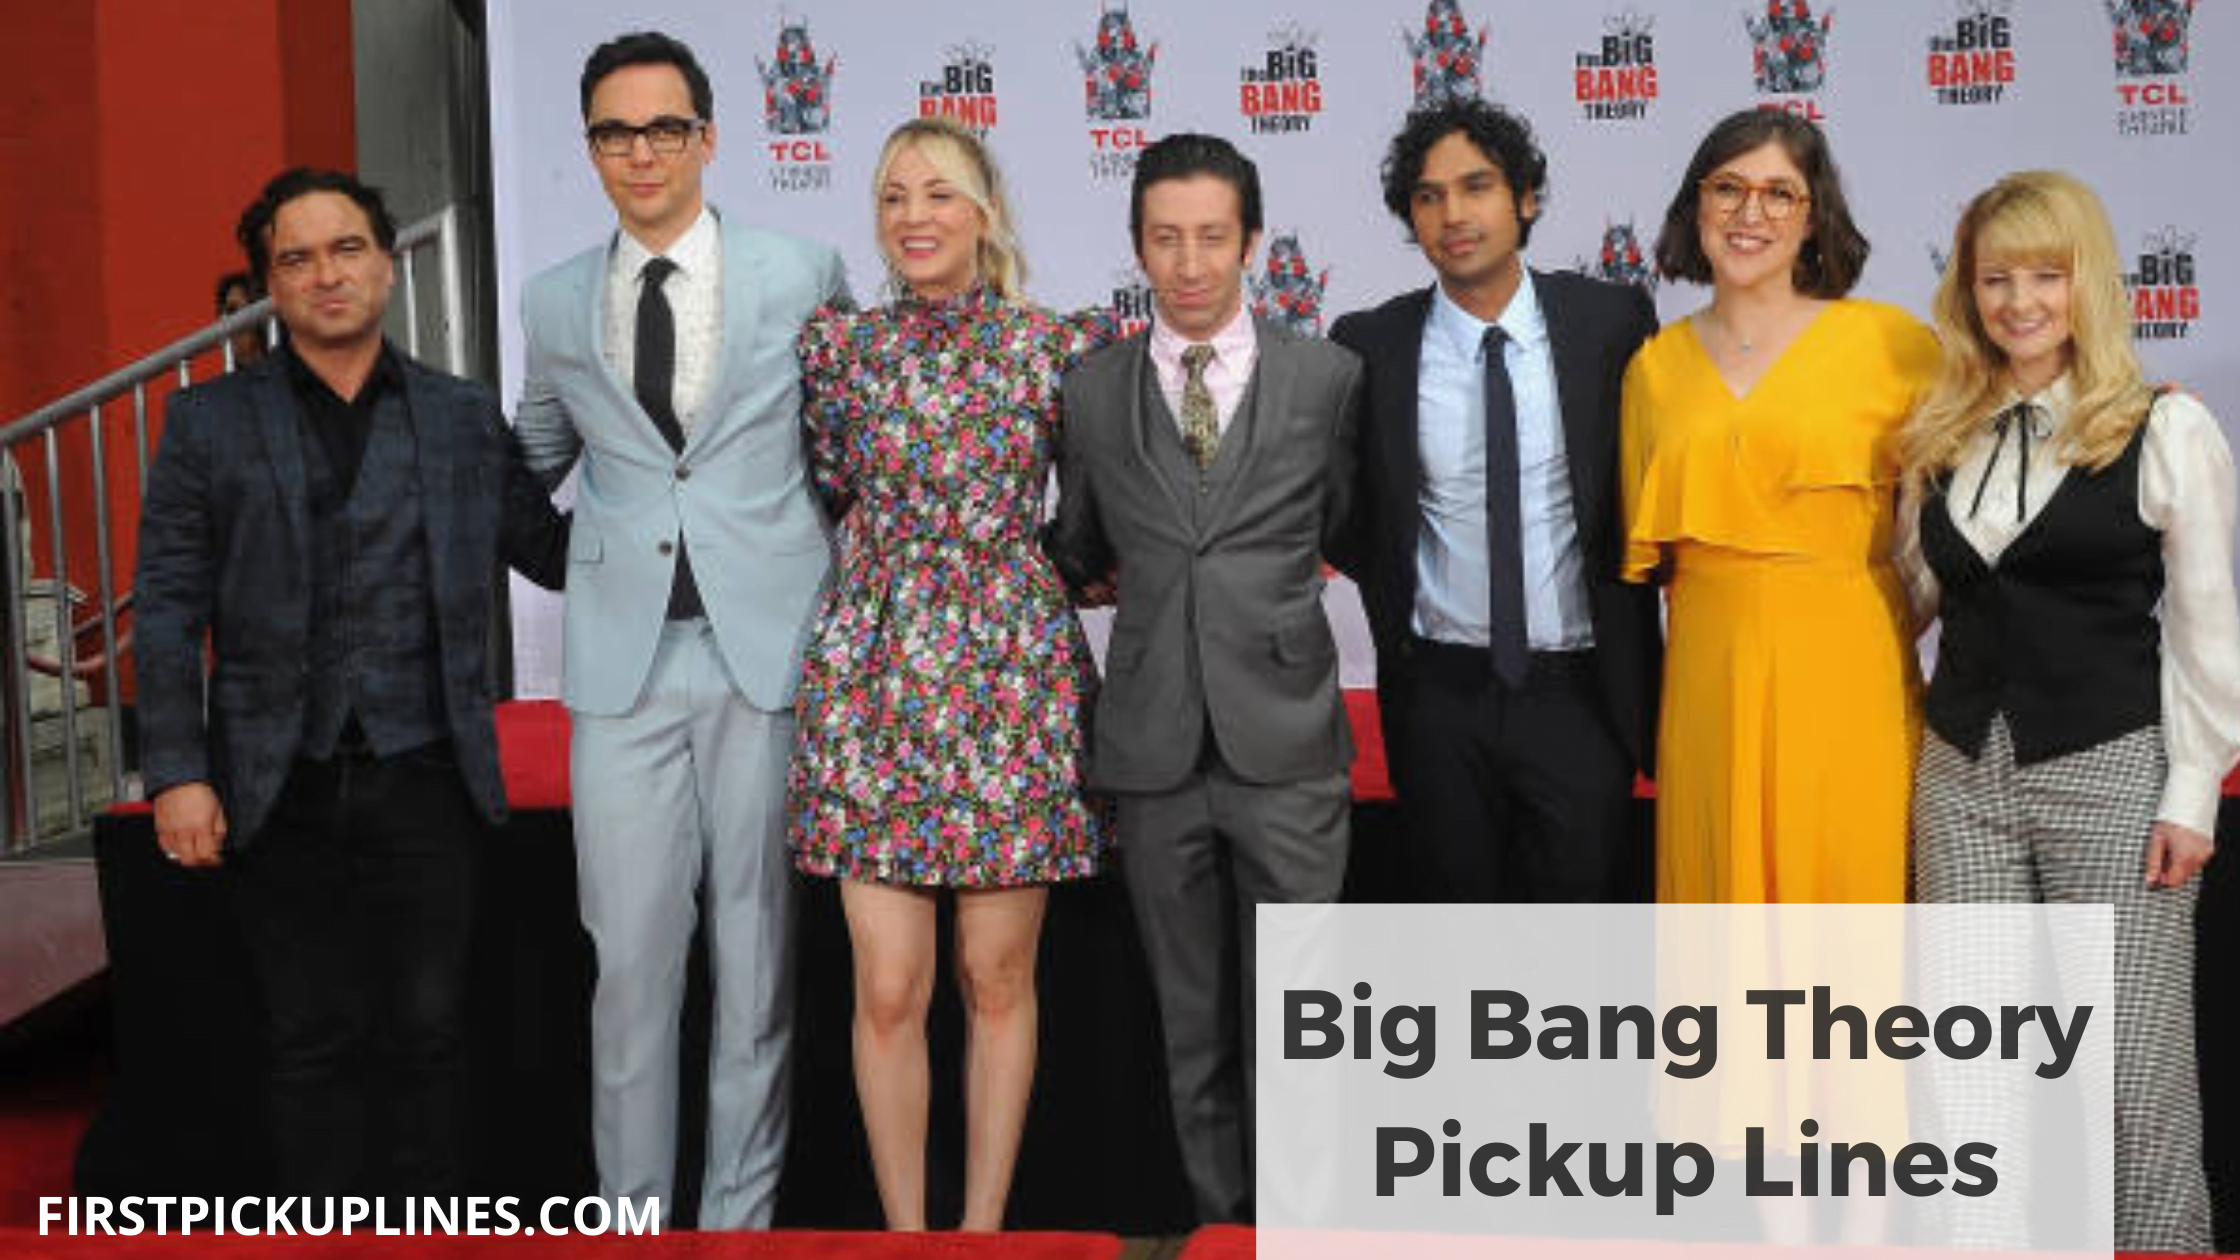 Big Bang Theory Pickup Lines1 3